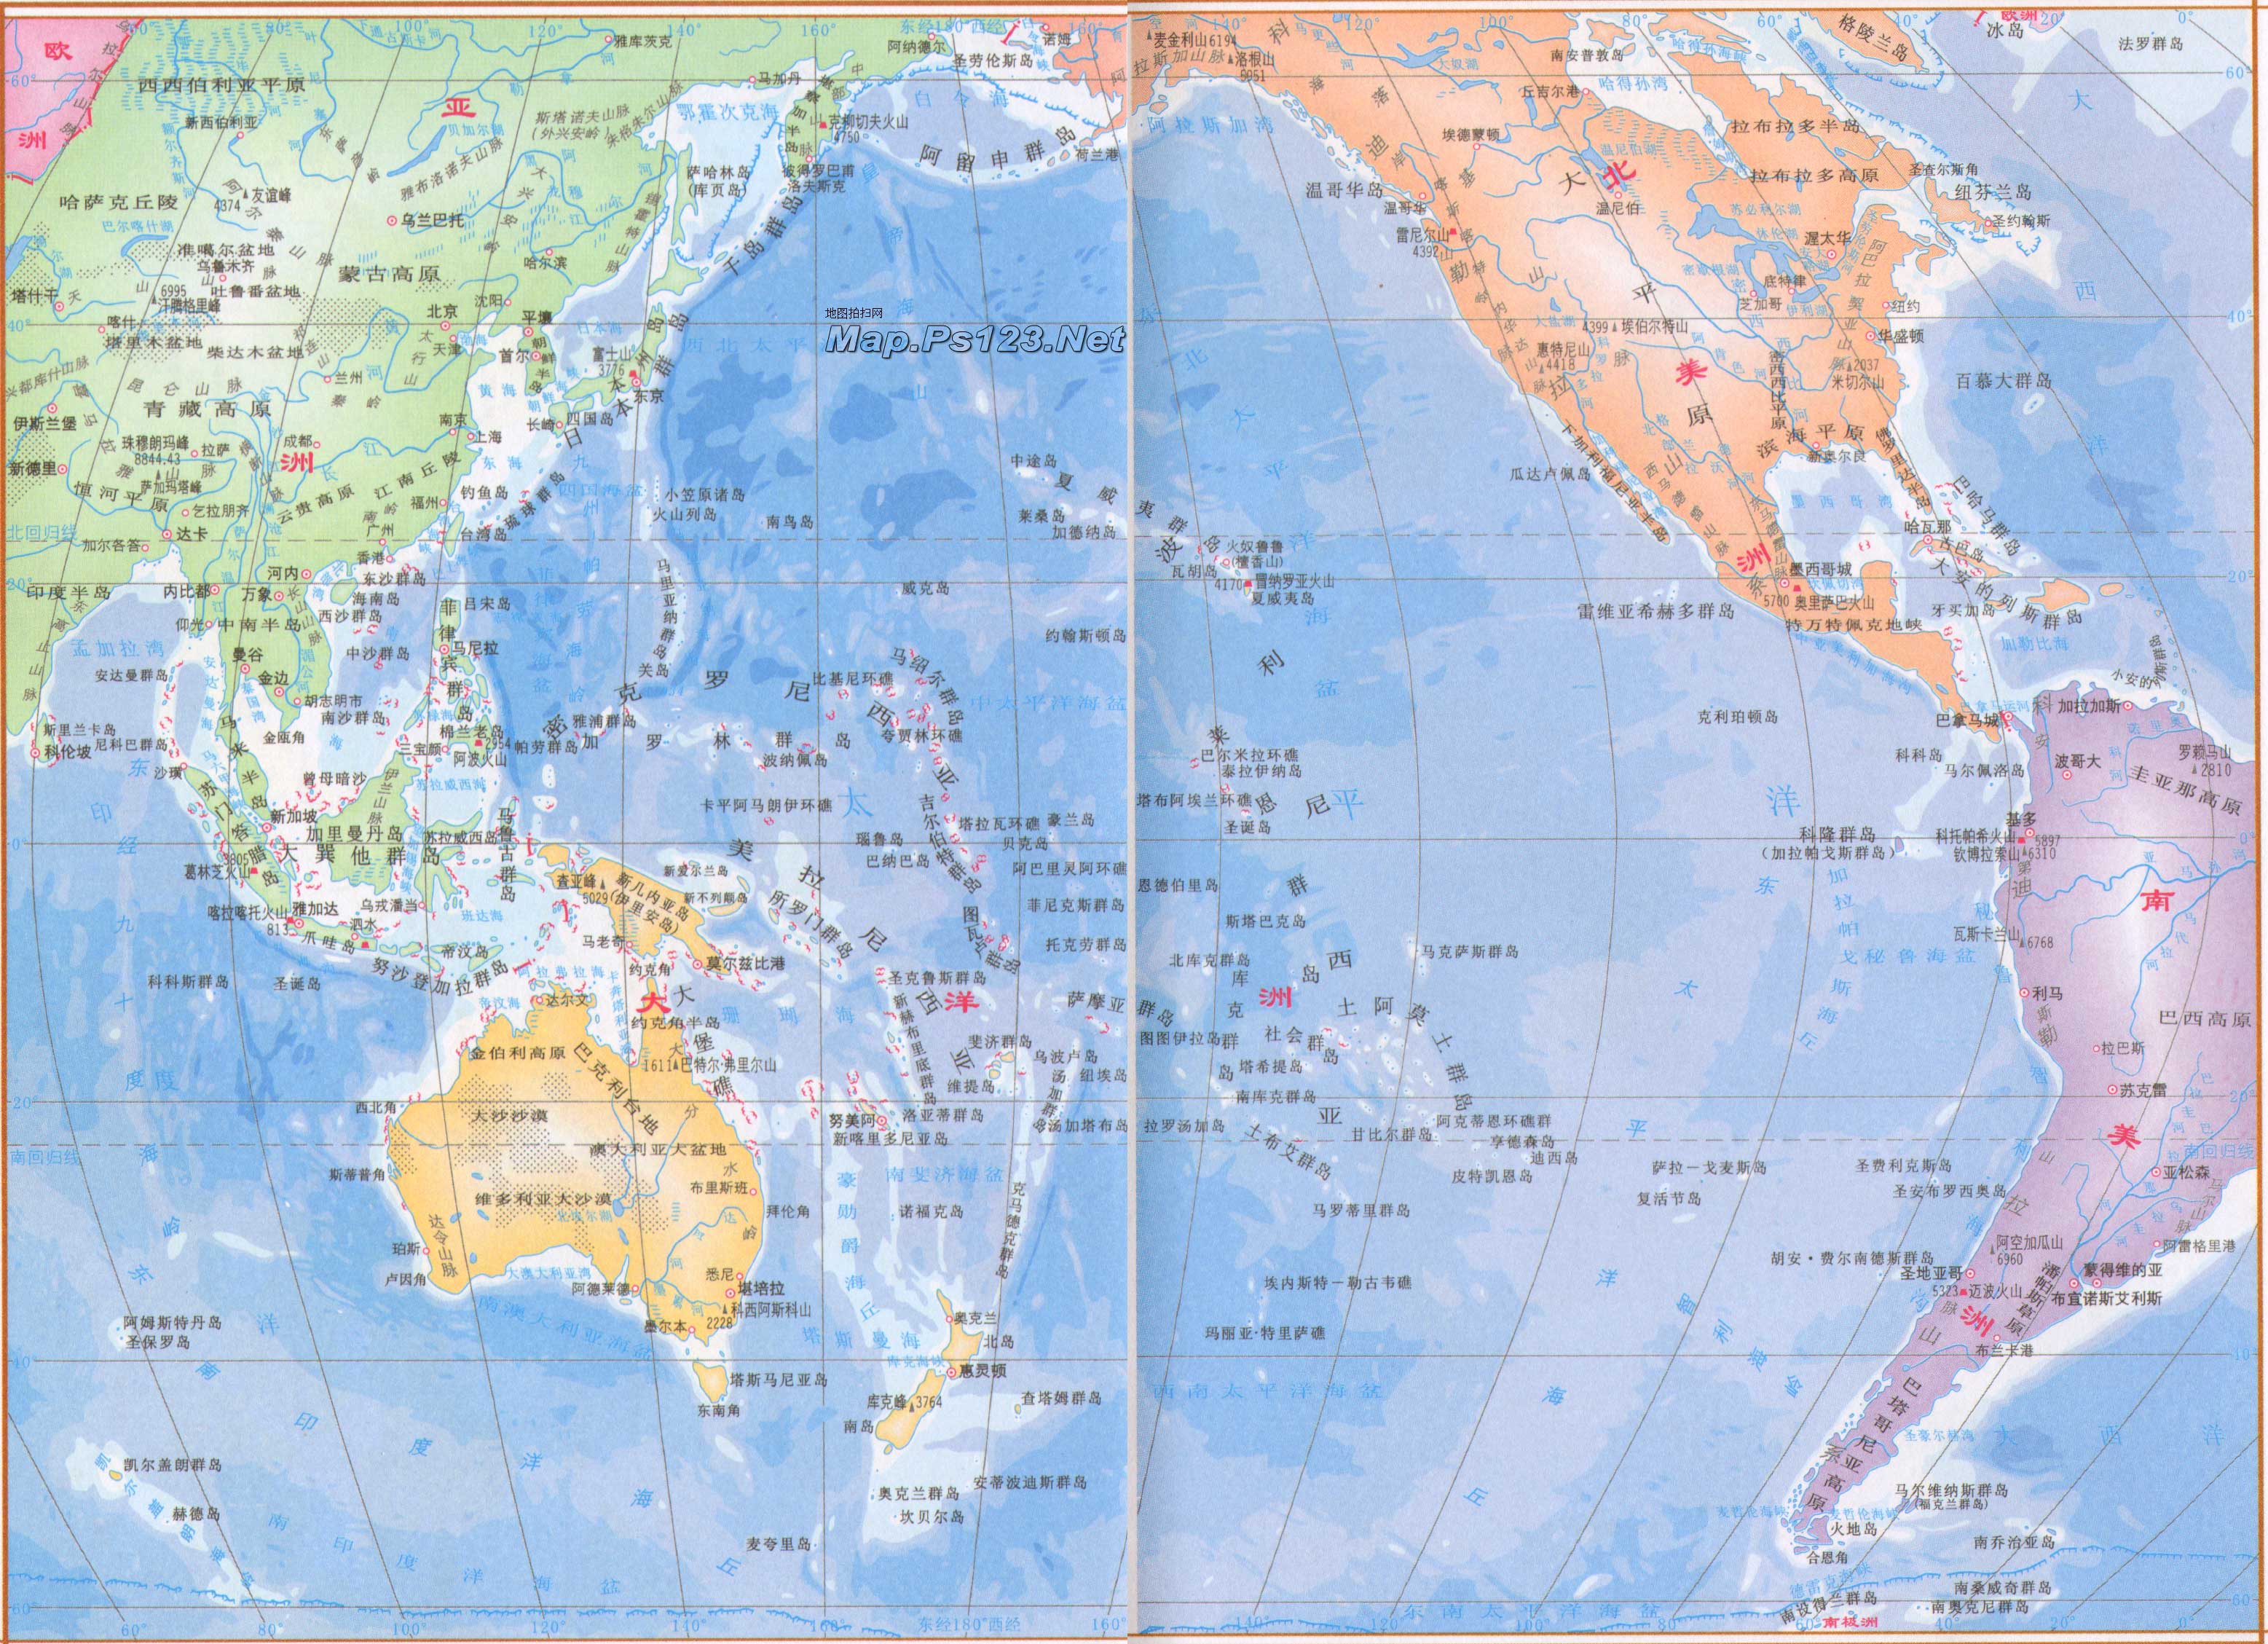 几大洲几大洋,几大洲几大洋是指哪些